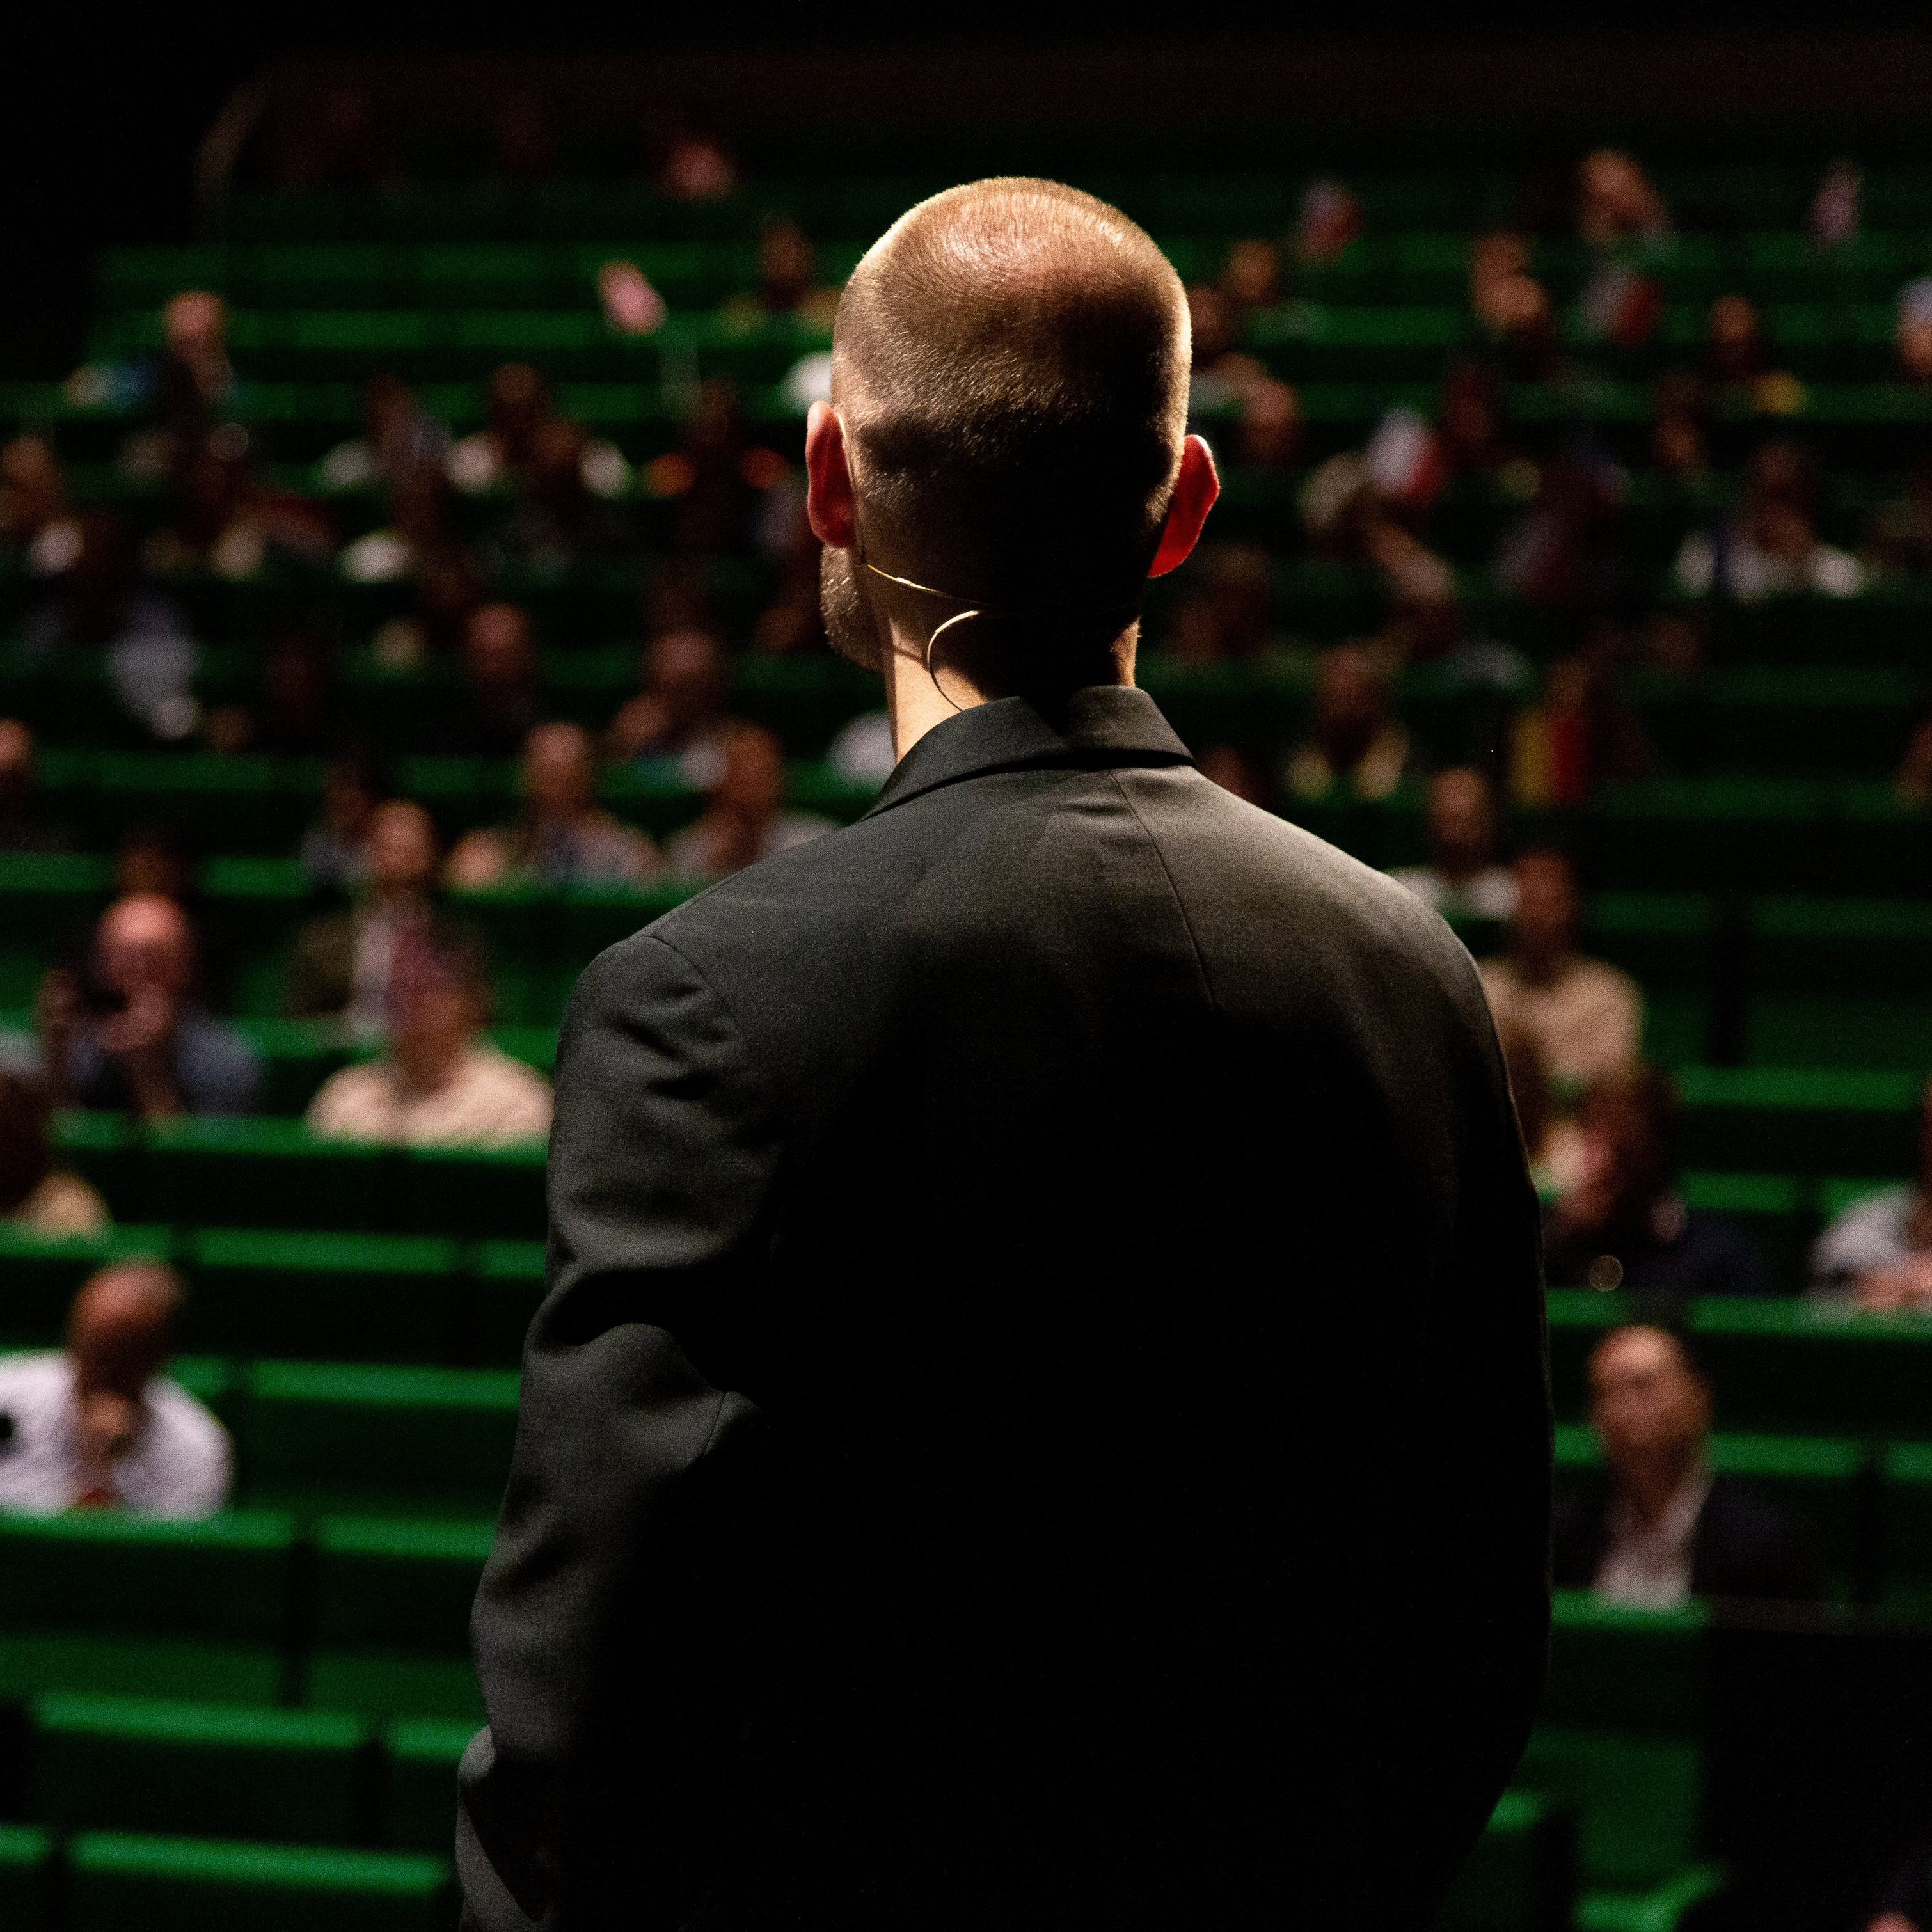 身穿黑色西装的男士面向礼堂内绿色座位上的观众。